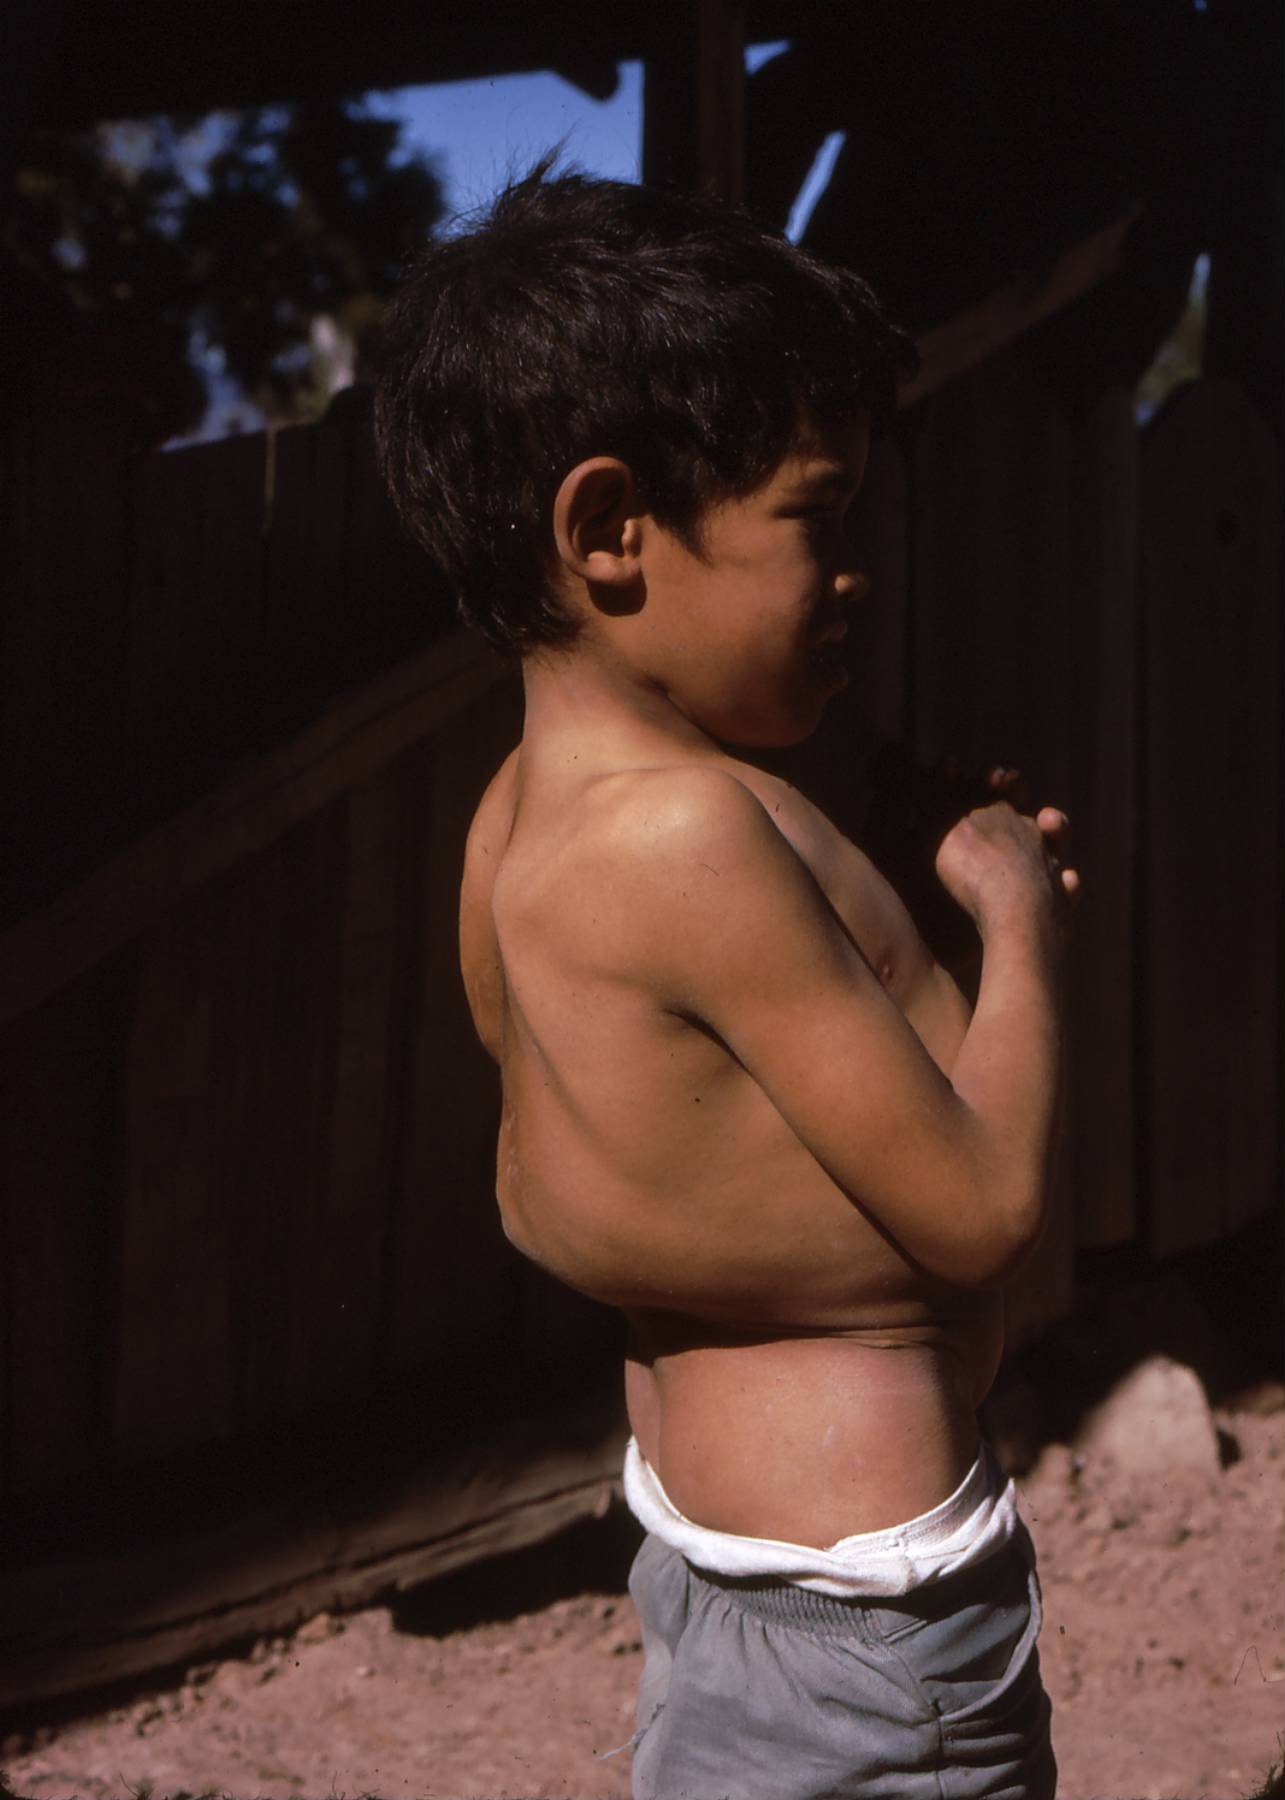 Cuando el Proyecto Piaxtla comenzó en la Sierra Madre, la tuberculosis era una afección común, debilitante y a menudo fatal. Este niño tiene la enfermedad de Pott o tuberculosis de la columna. Gracias al programa de vacunación, la tuberculosis se volvió mucho menos frecuente.